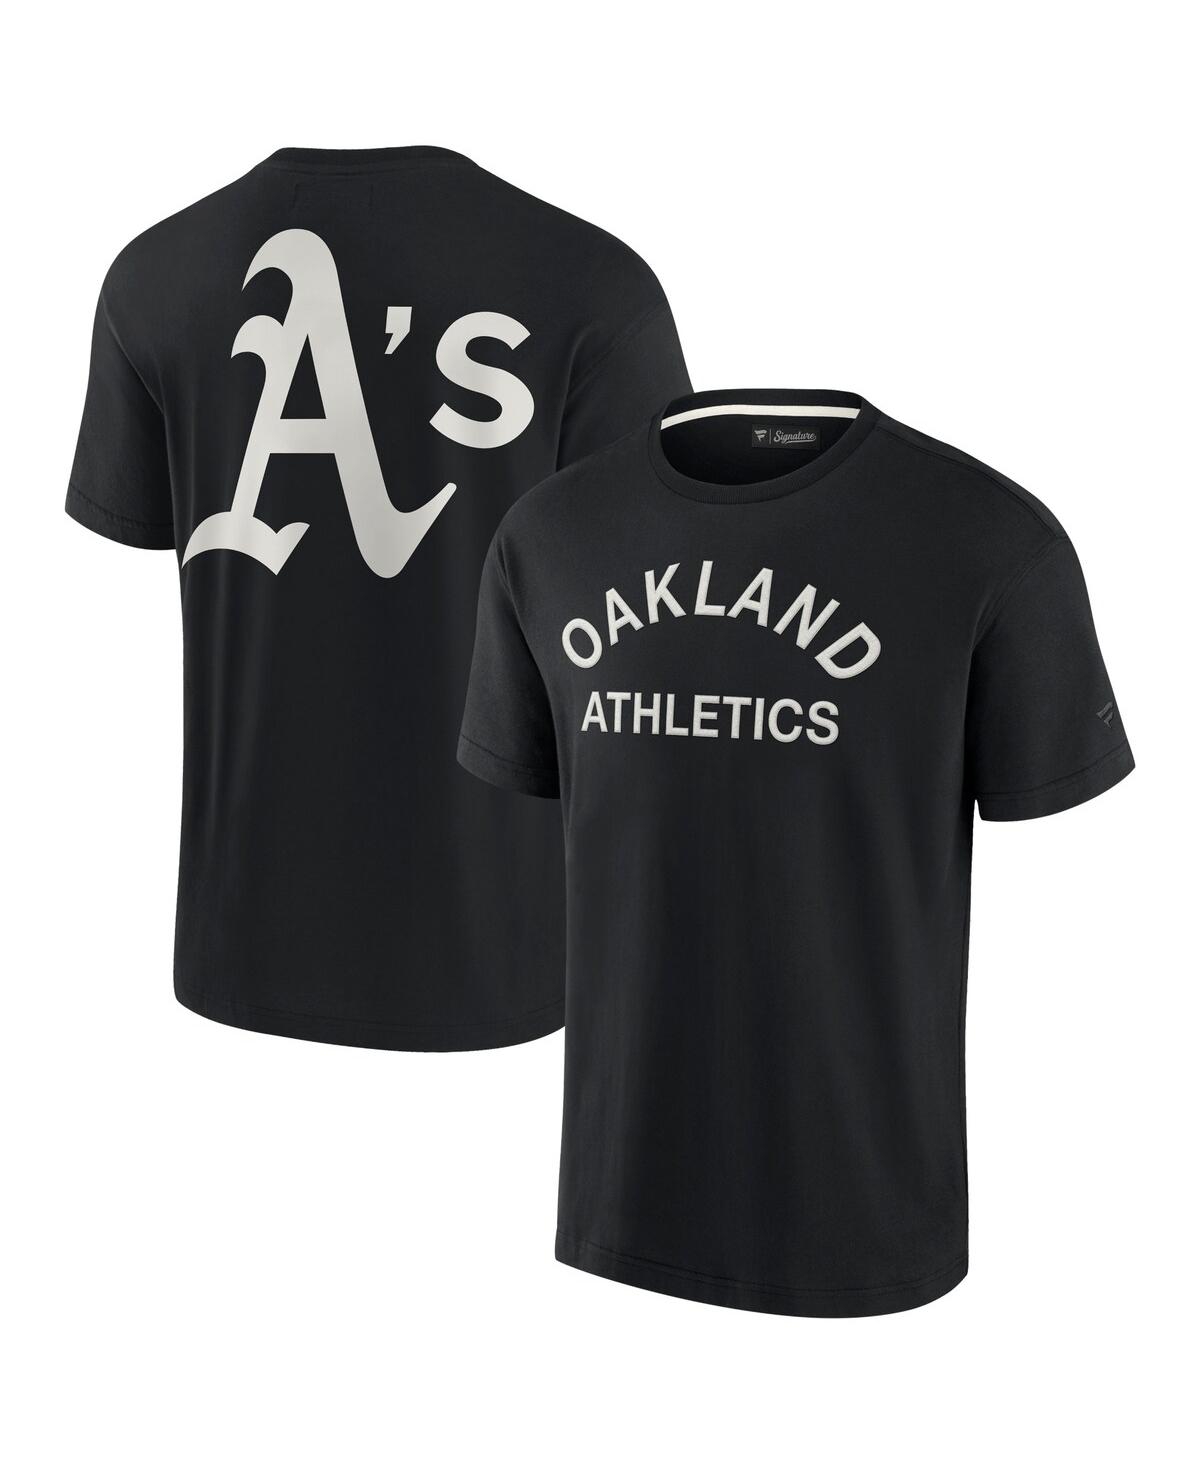 Fanatics Signature Men's And Women's  Black Oakland Athletics Super Soft Short Sleeve T-shirt